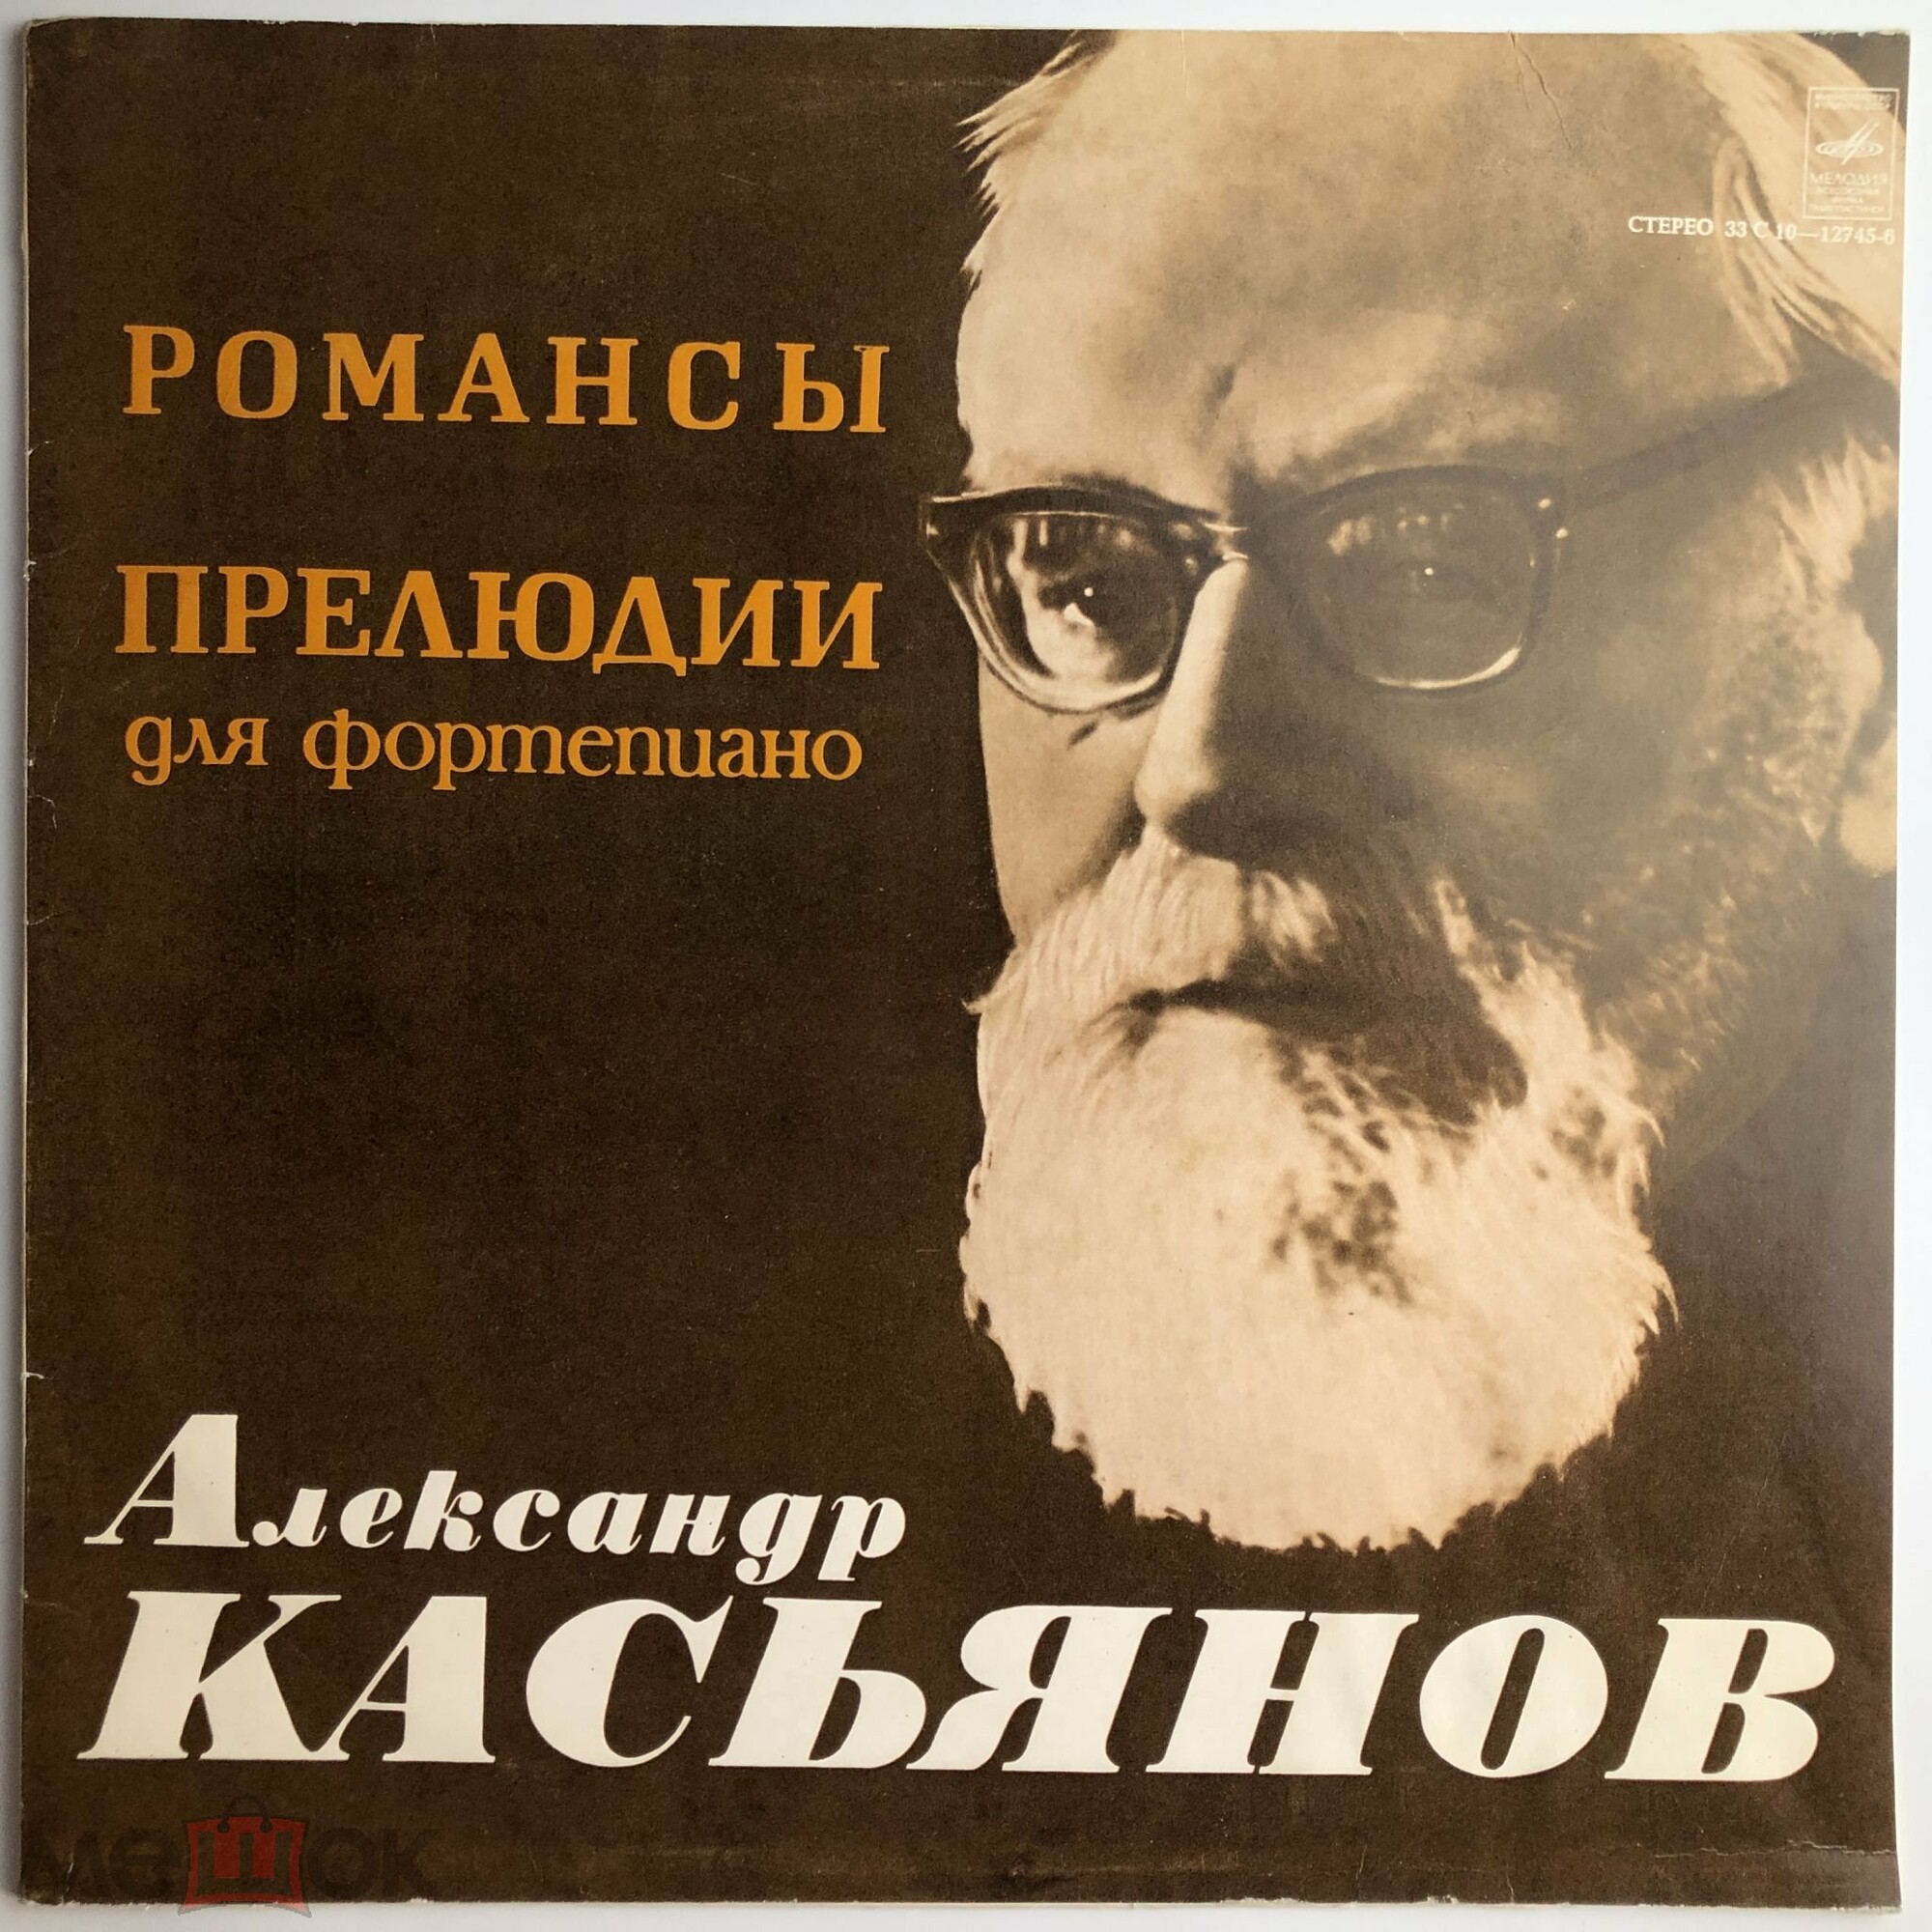 A. КАСЬЯНОВ (1891): Романсы, прелюдии для ф-но